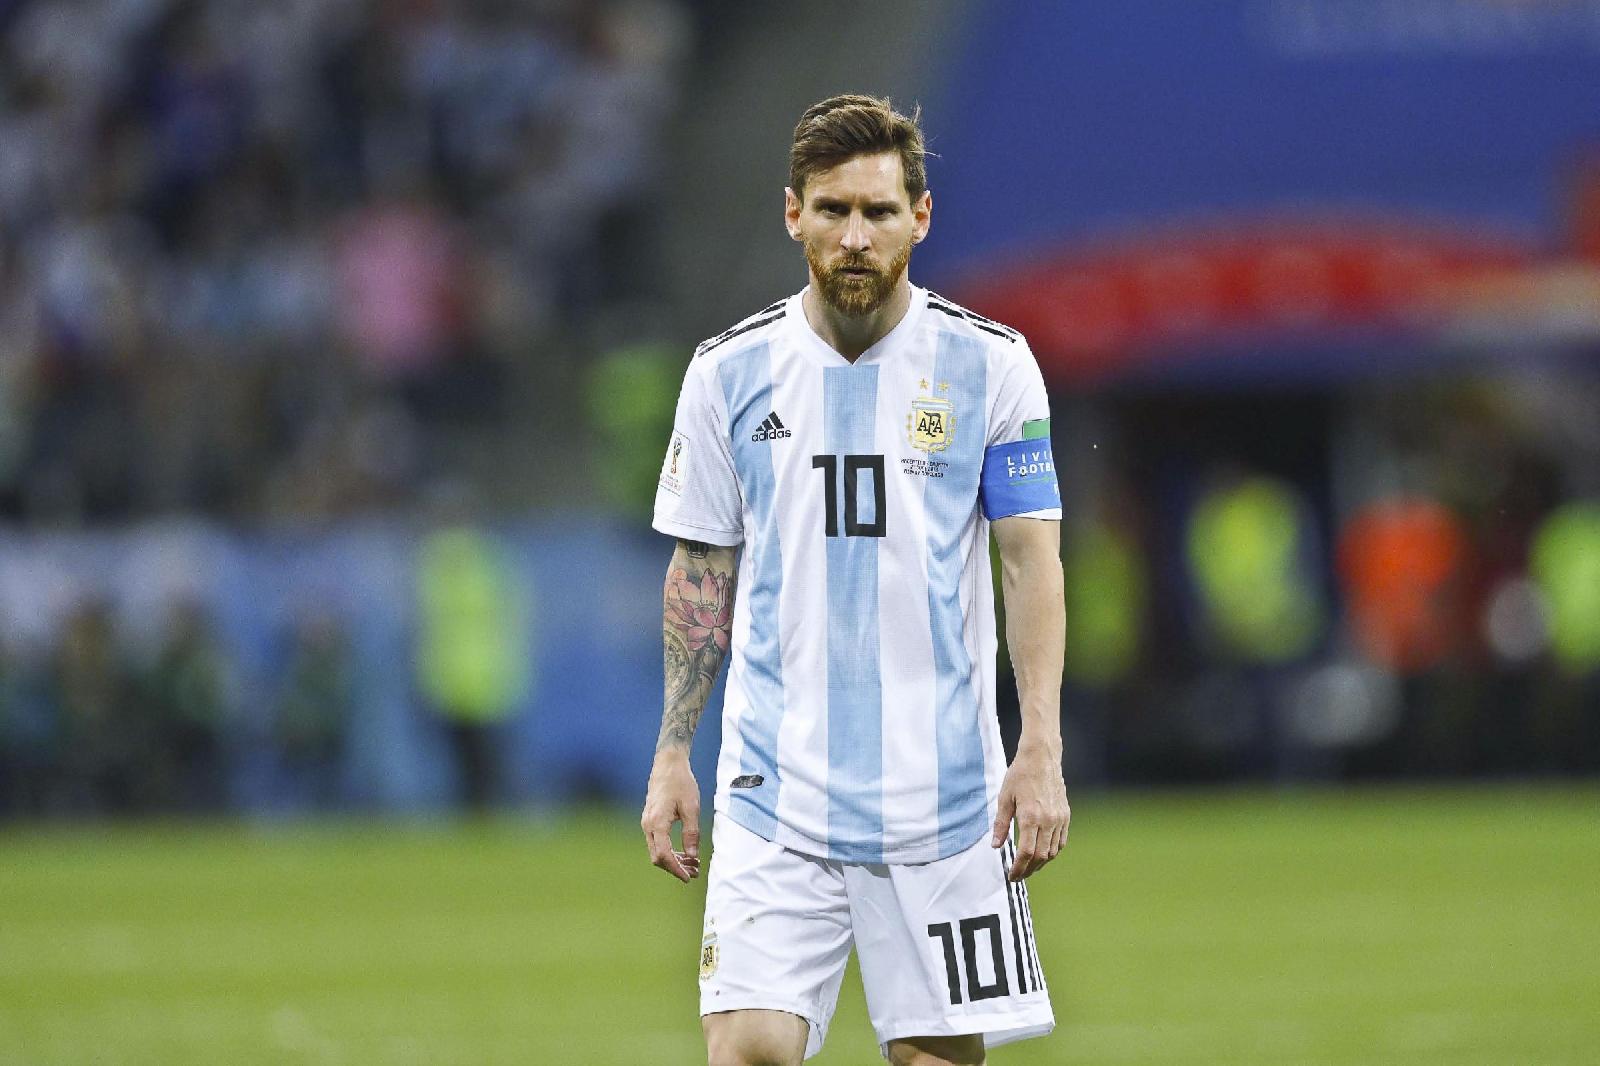 Argentina-Cile, Messi espulso e polemico: 